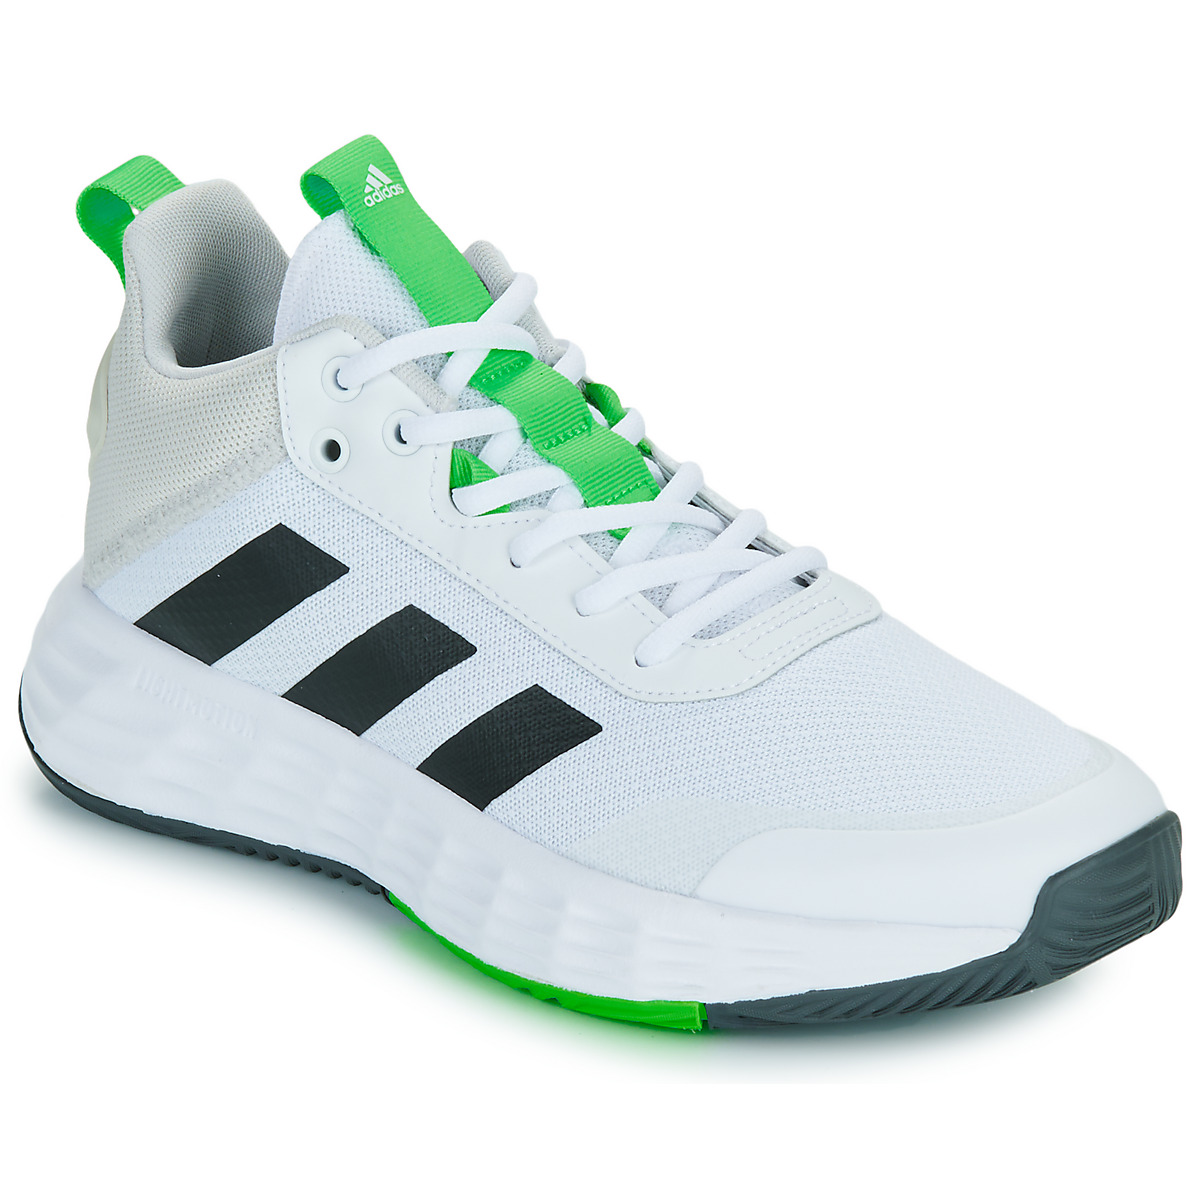 Παπούτσια του Μπάσκετ adidas OWNTHEGAME 2.0